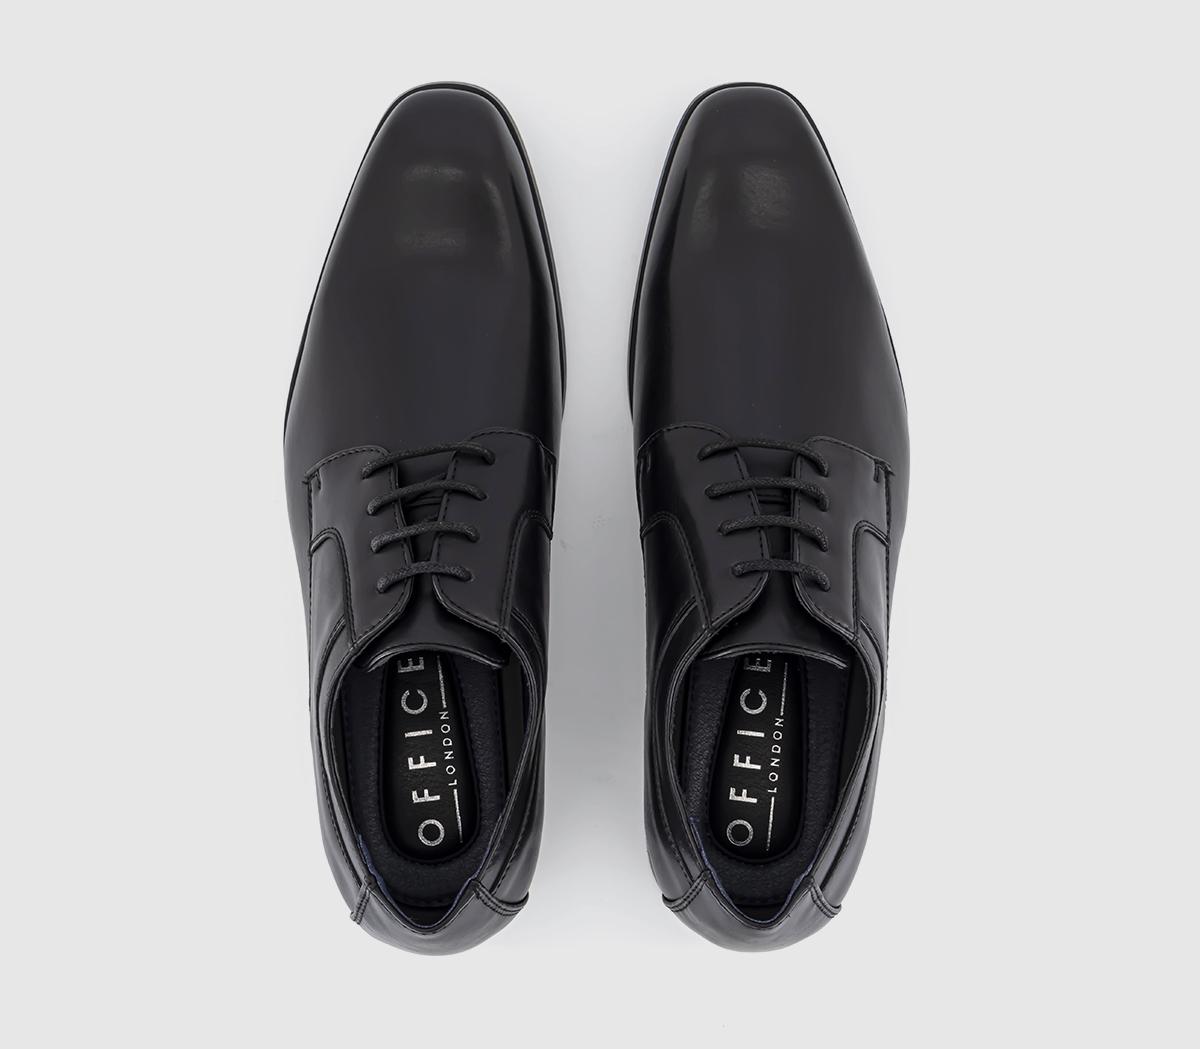 OFFICE Modena Plain Toe Derby Shoes Black - Men’s Smart Shoes